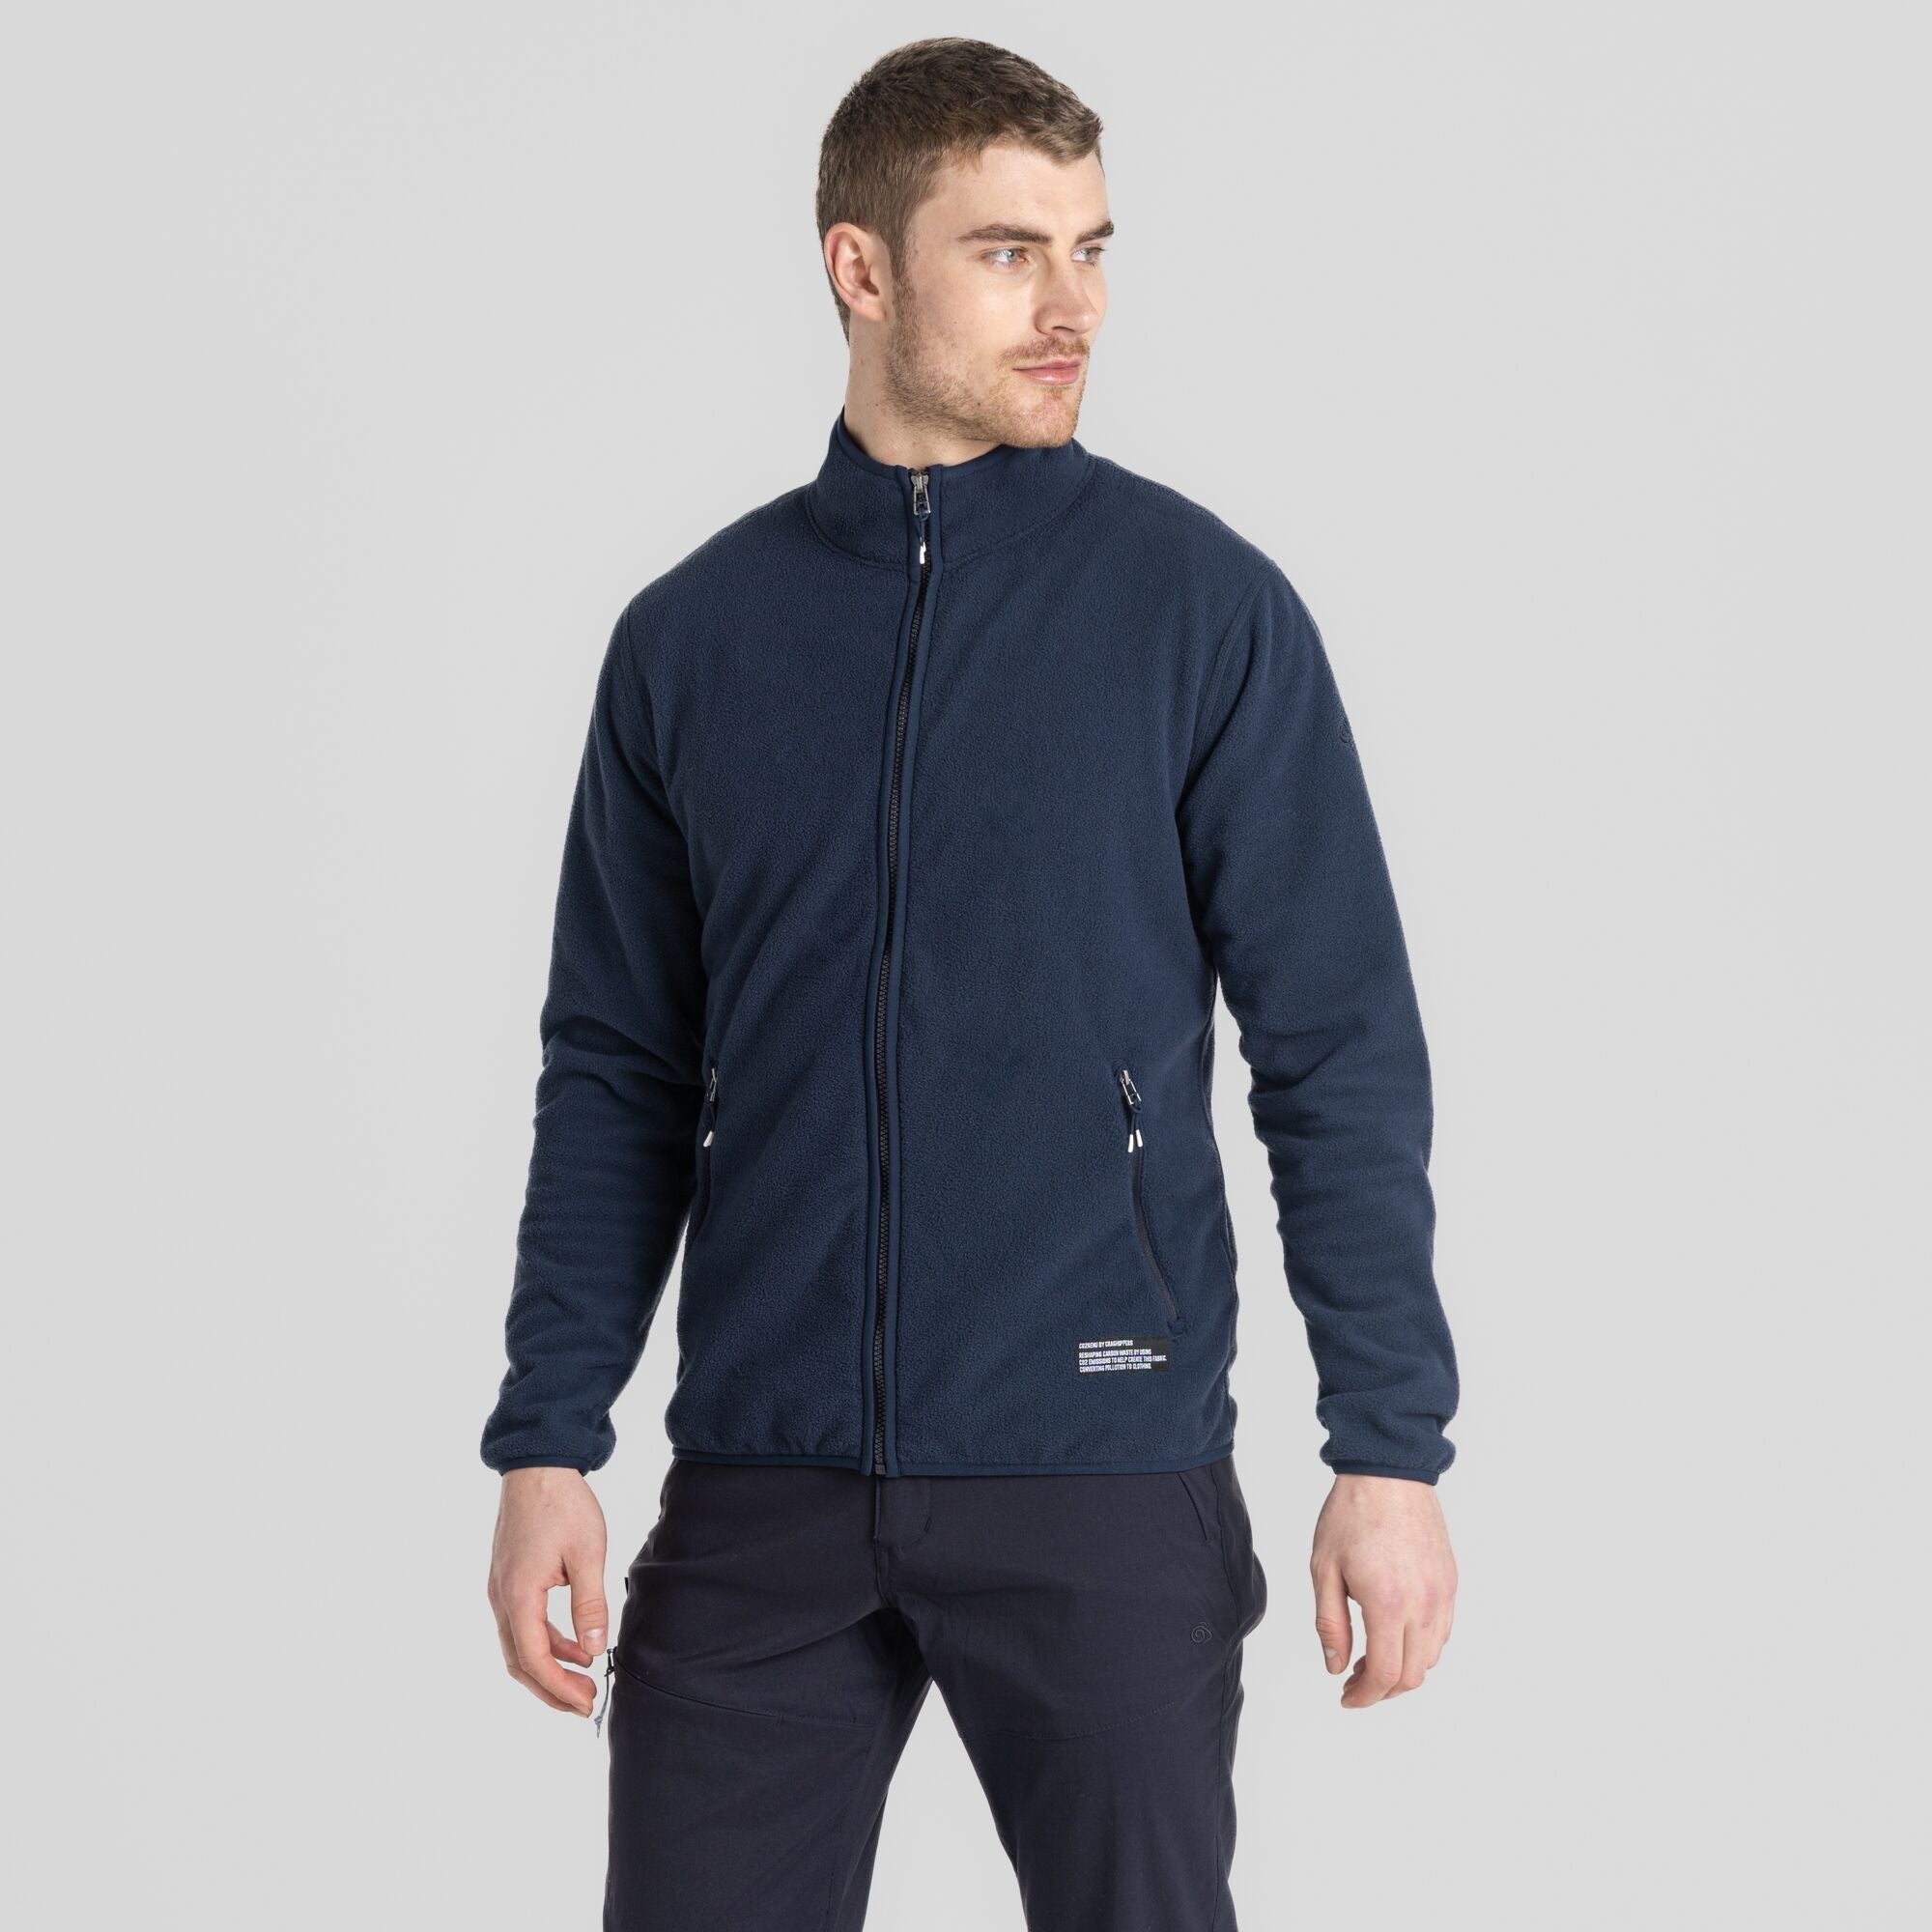 Men's CO2 Renu Full Zip Fleece | Blue Navy